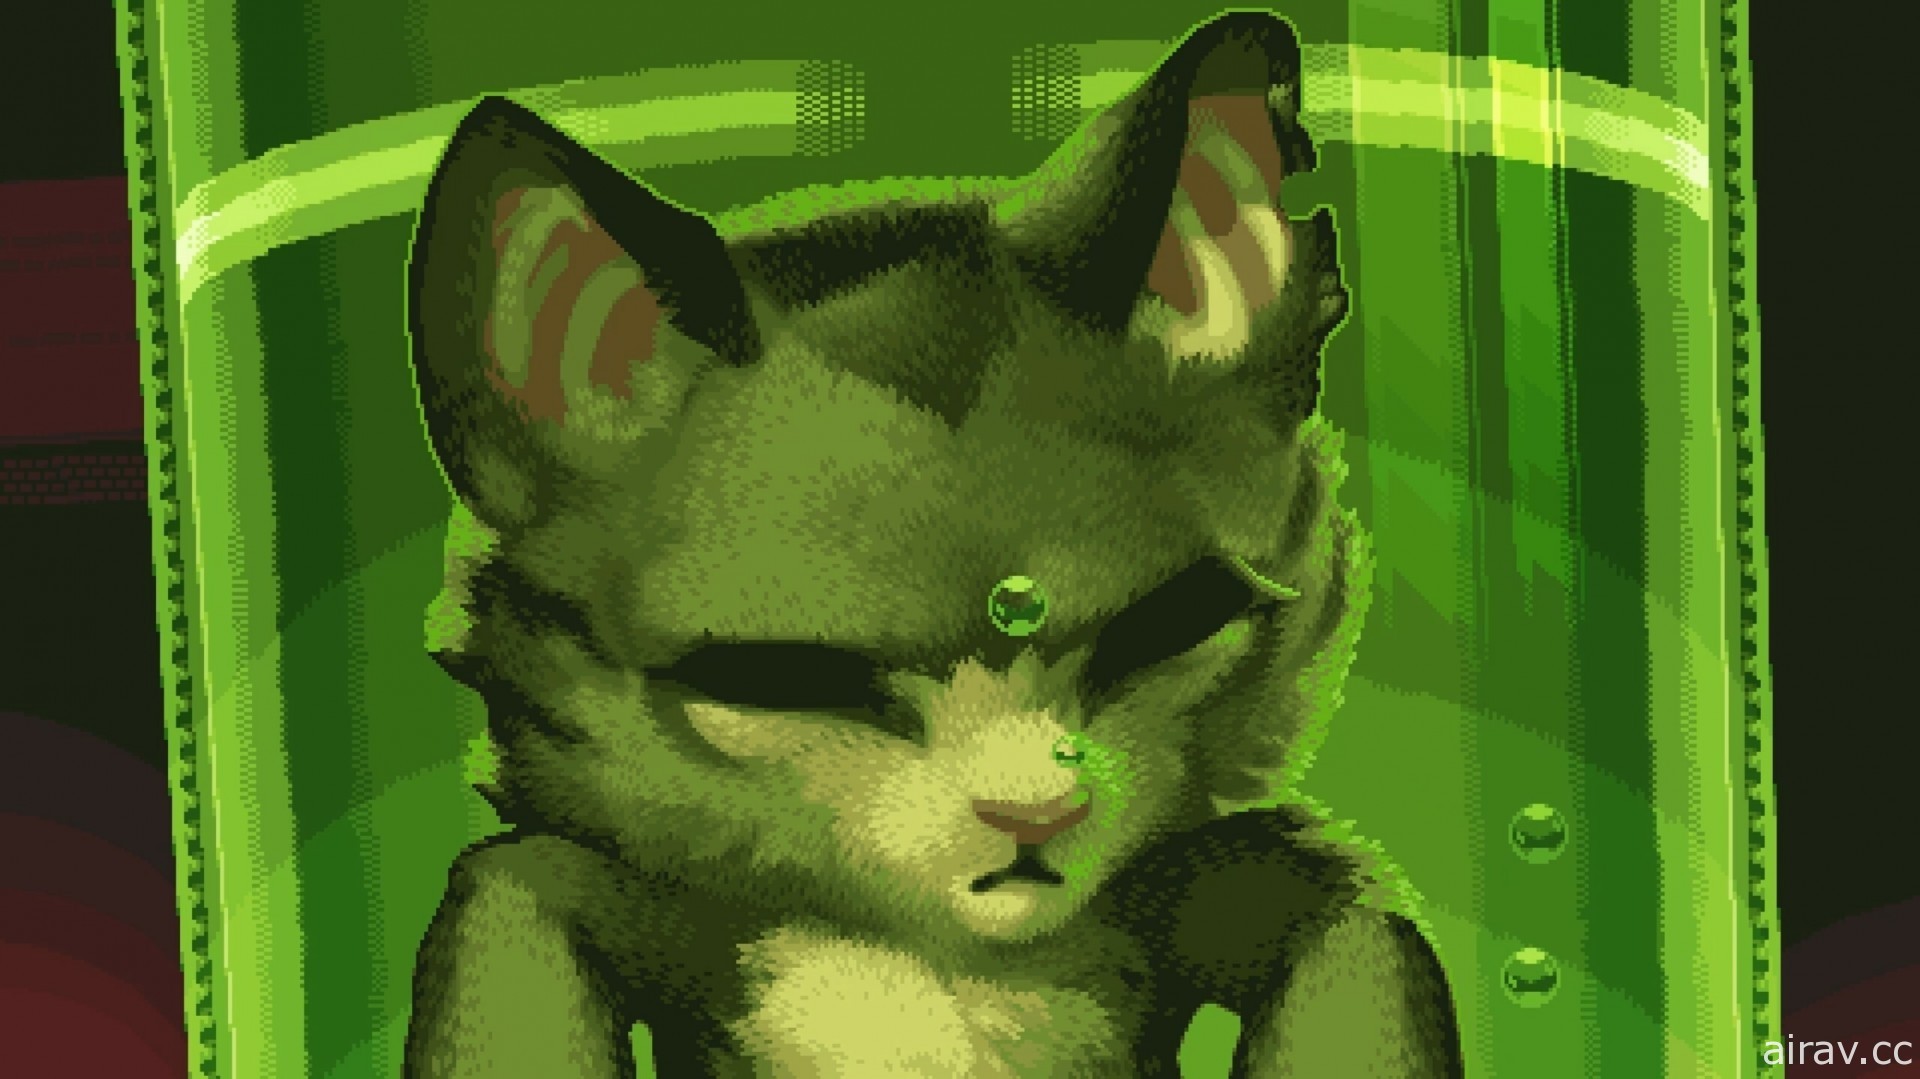 《超级猫仔 Super Catboy》公开游戏影片 预定明年春季上市